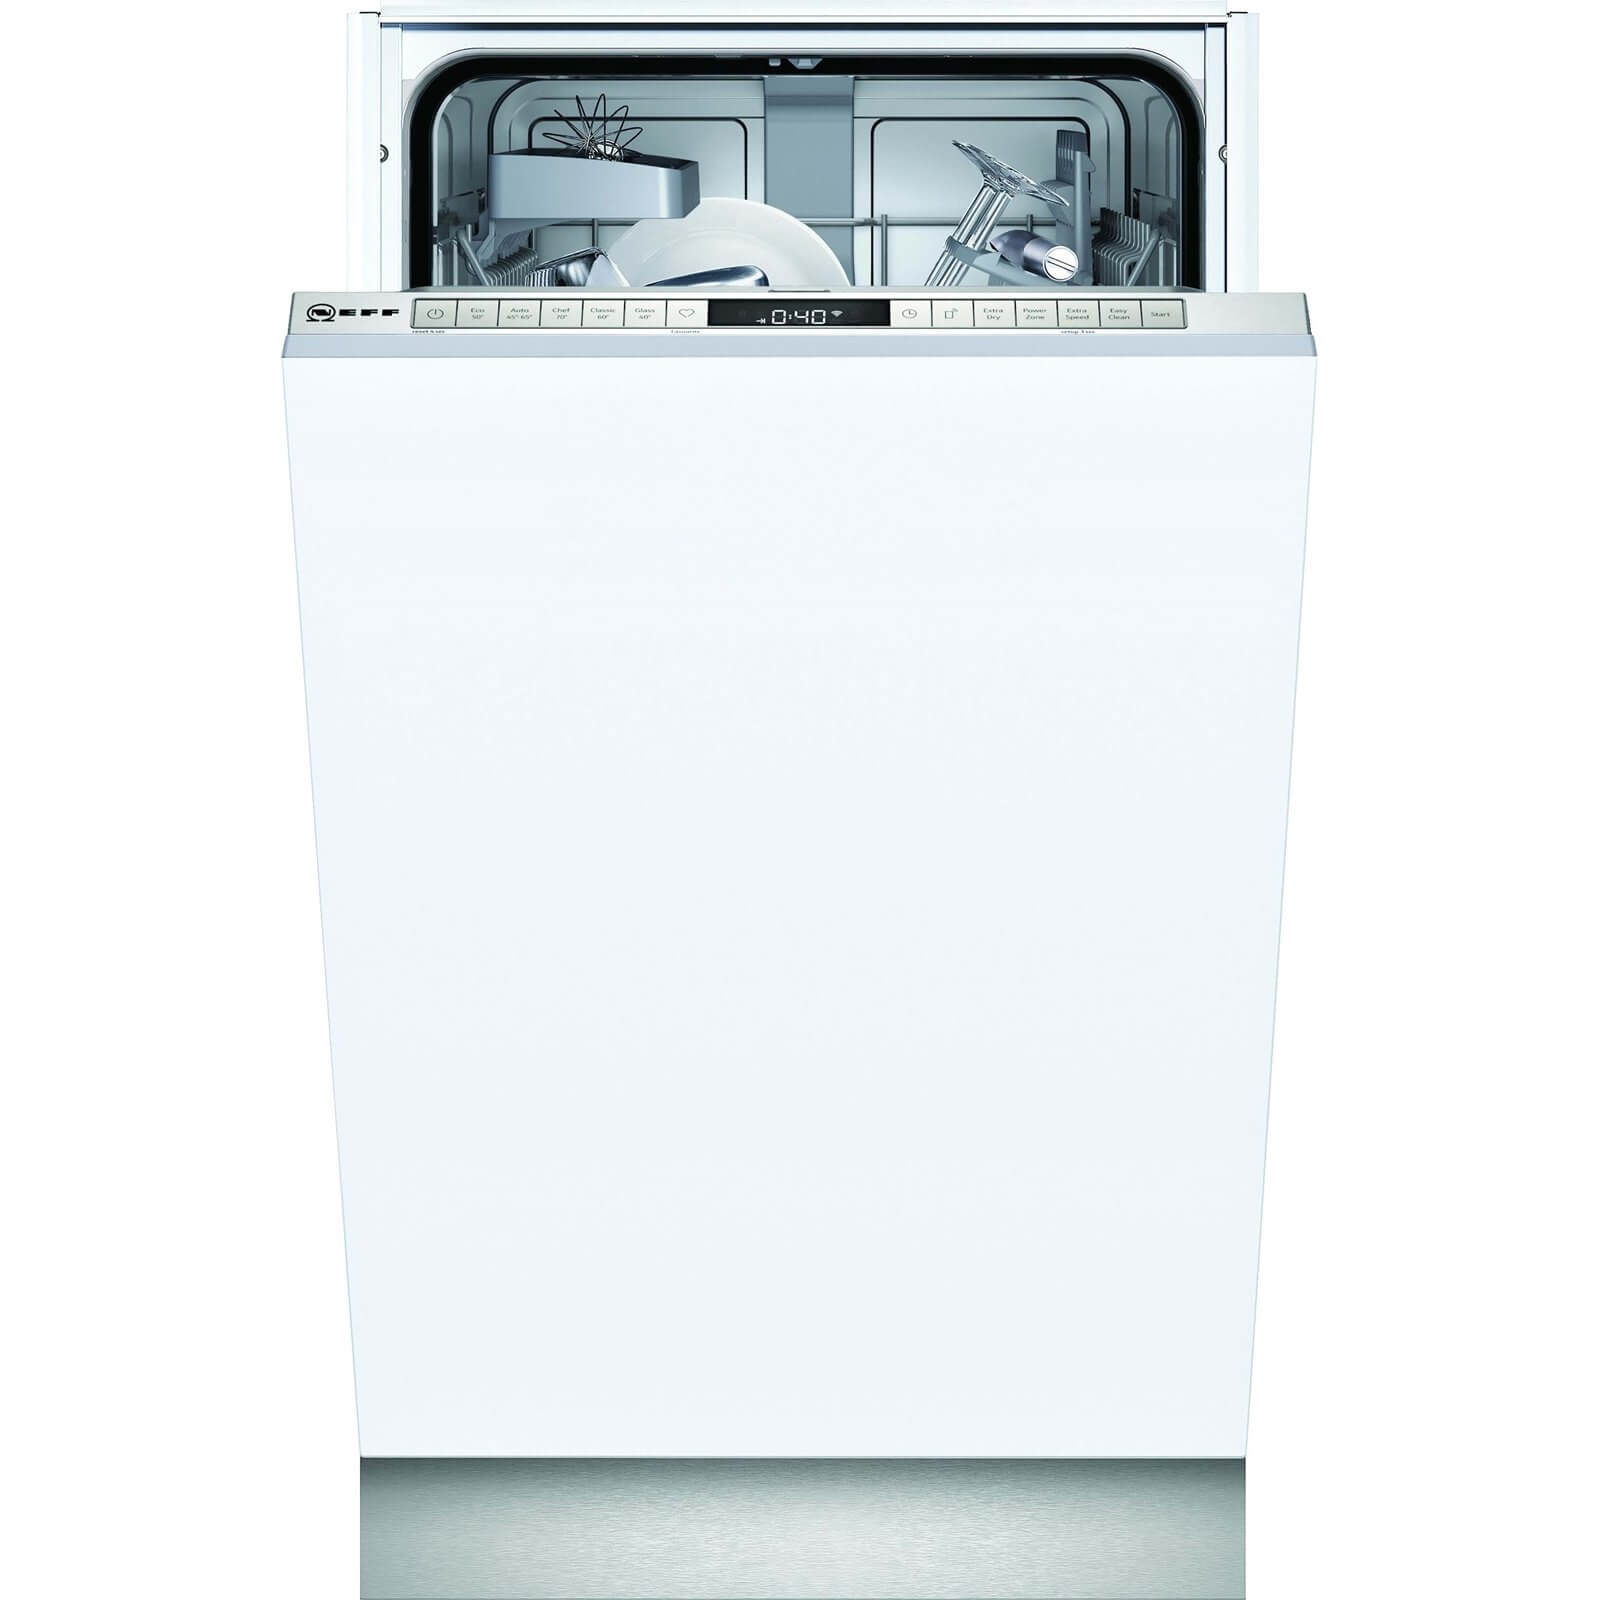 NEFF S875HKX20G 45cm Slimline Dishwasher